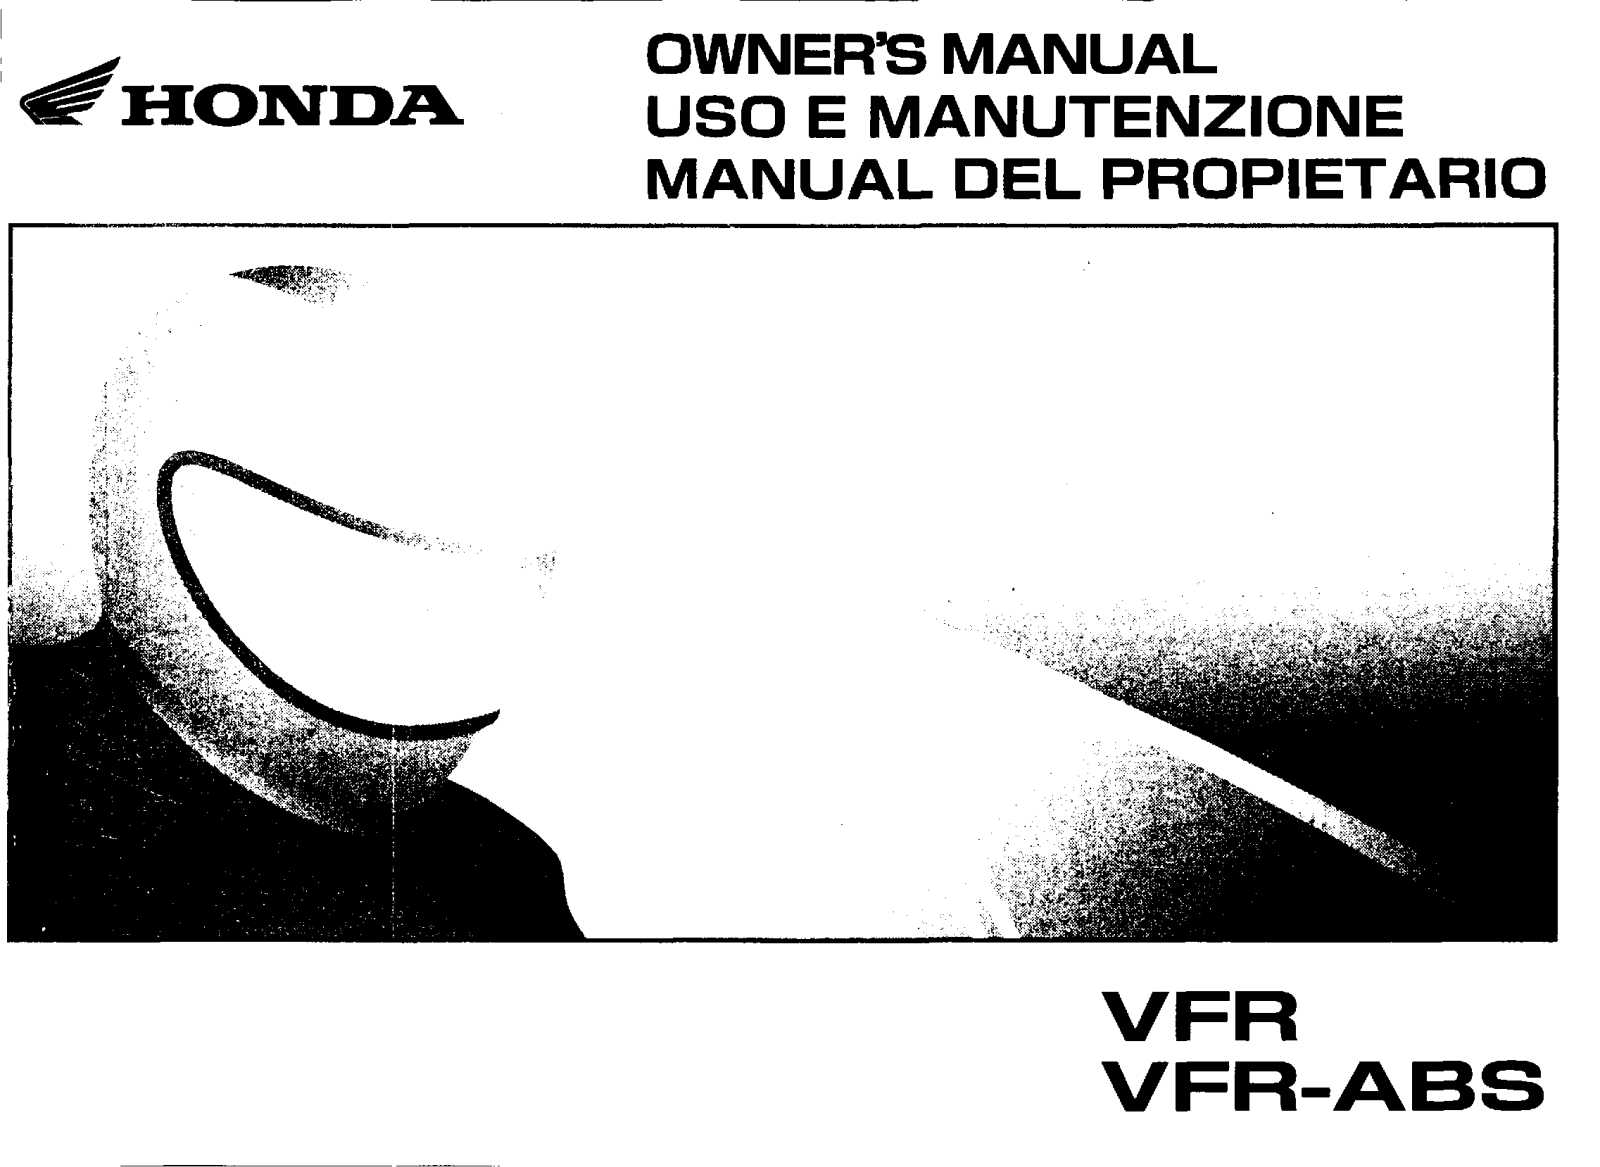 Honda VFR, VFR-ABS 2005 Owner's Manual